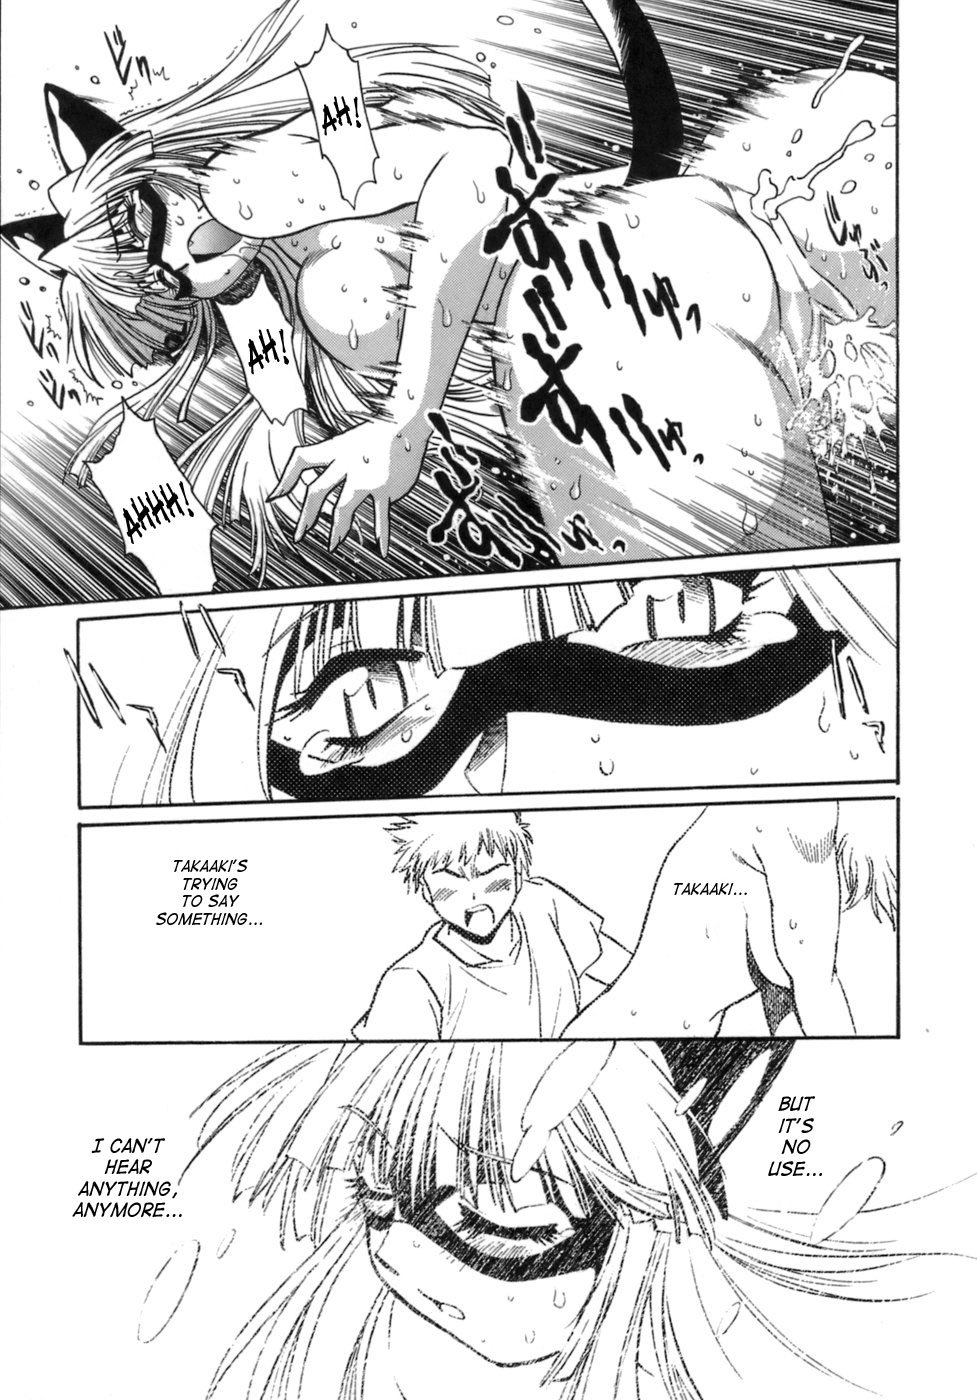 Tail Chaser Vol.1 164 hentai manga